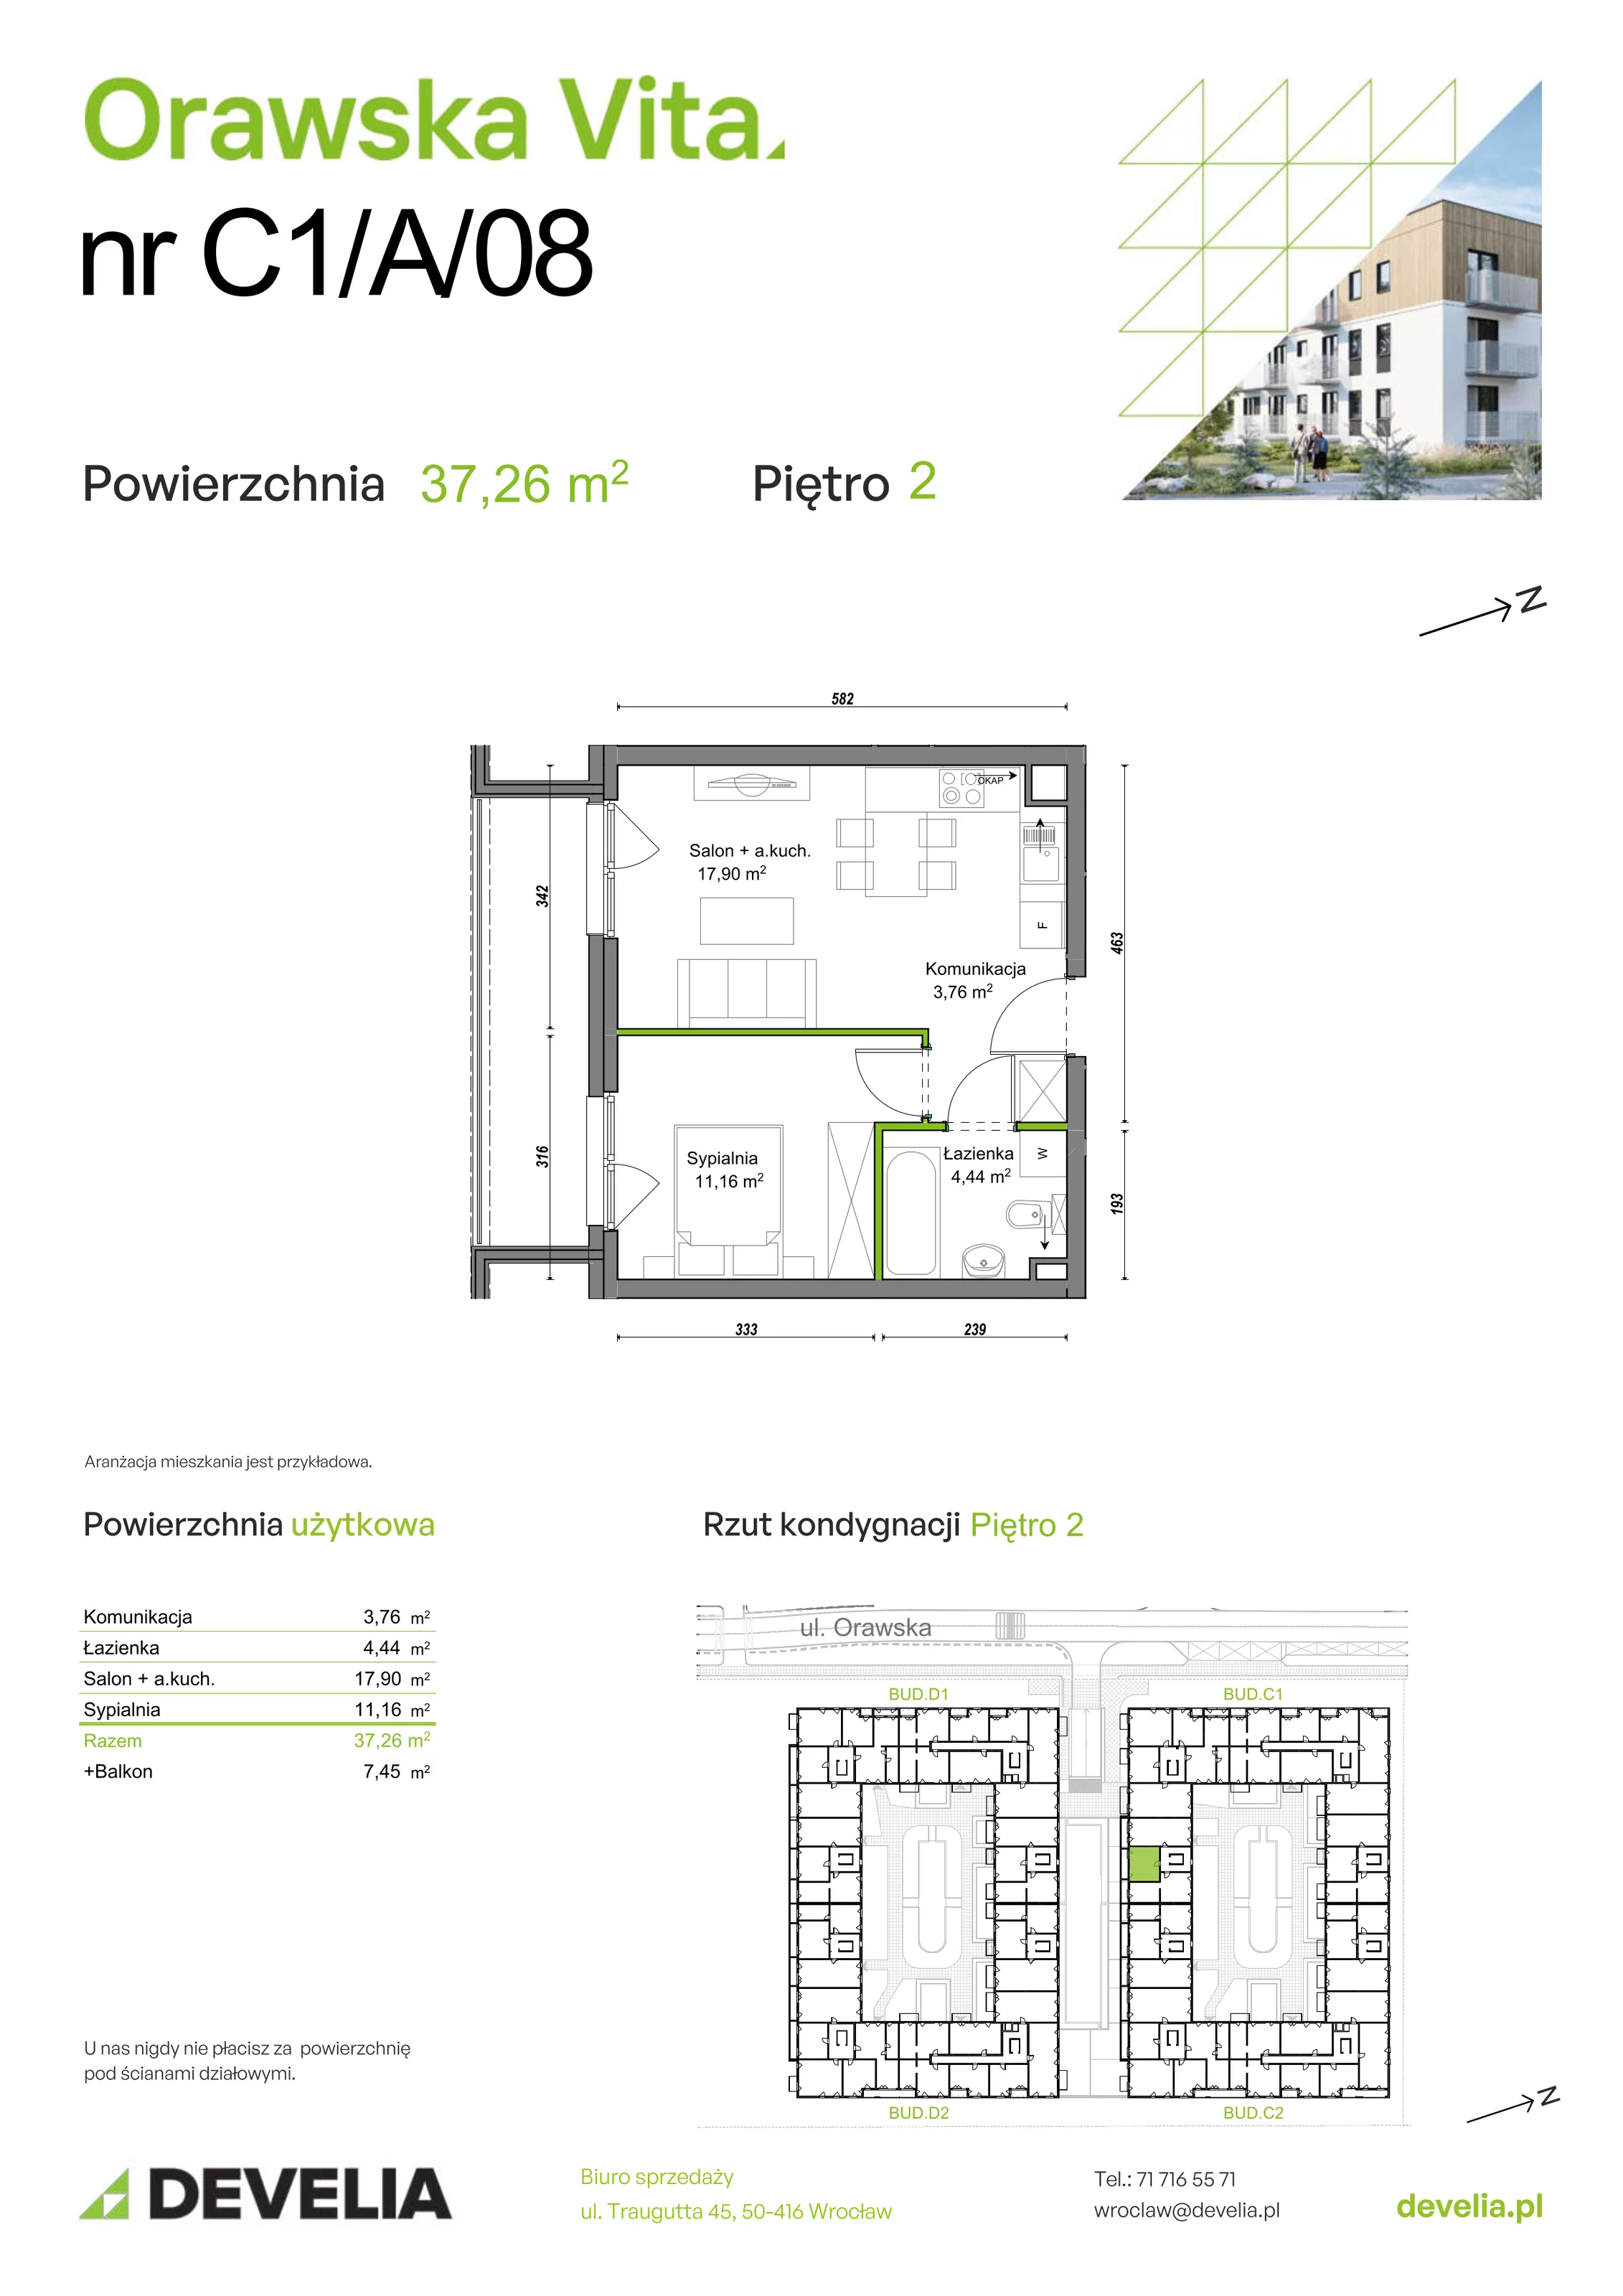 Mieszkanie 37,26 m², piętro 2, oferta nr C1/A/08, Orawska Vita, Wrocław, Ołtaszyn, Krzyki, ul. Orawska 73